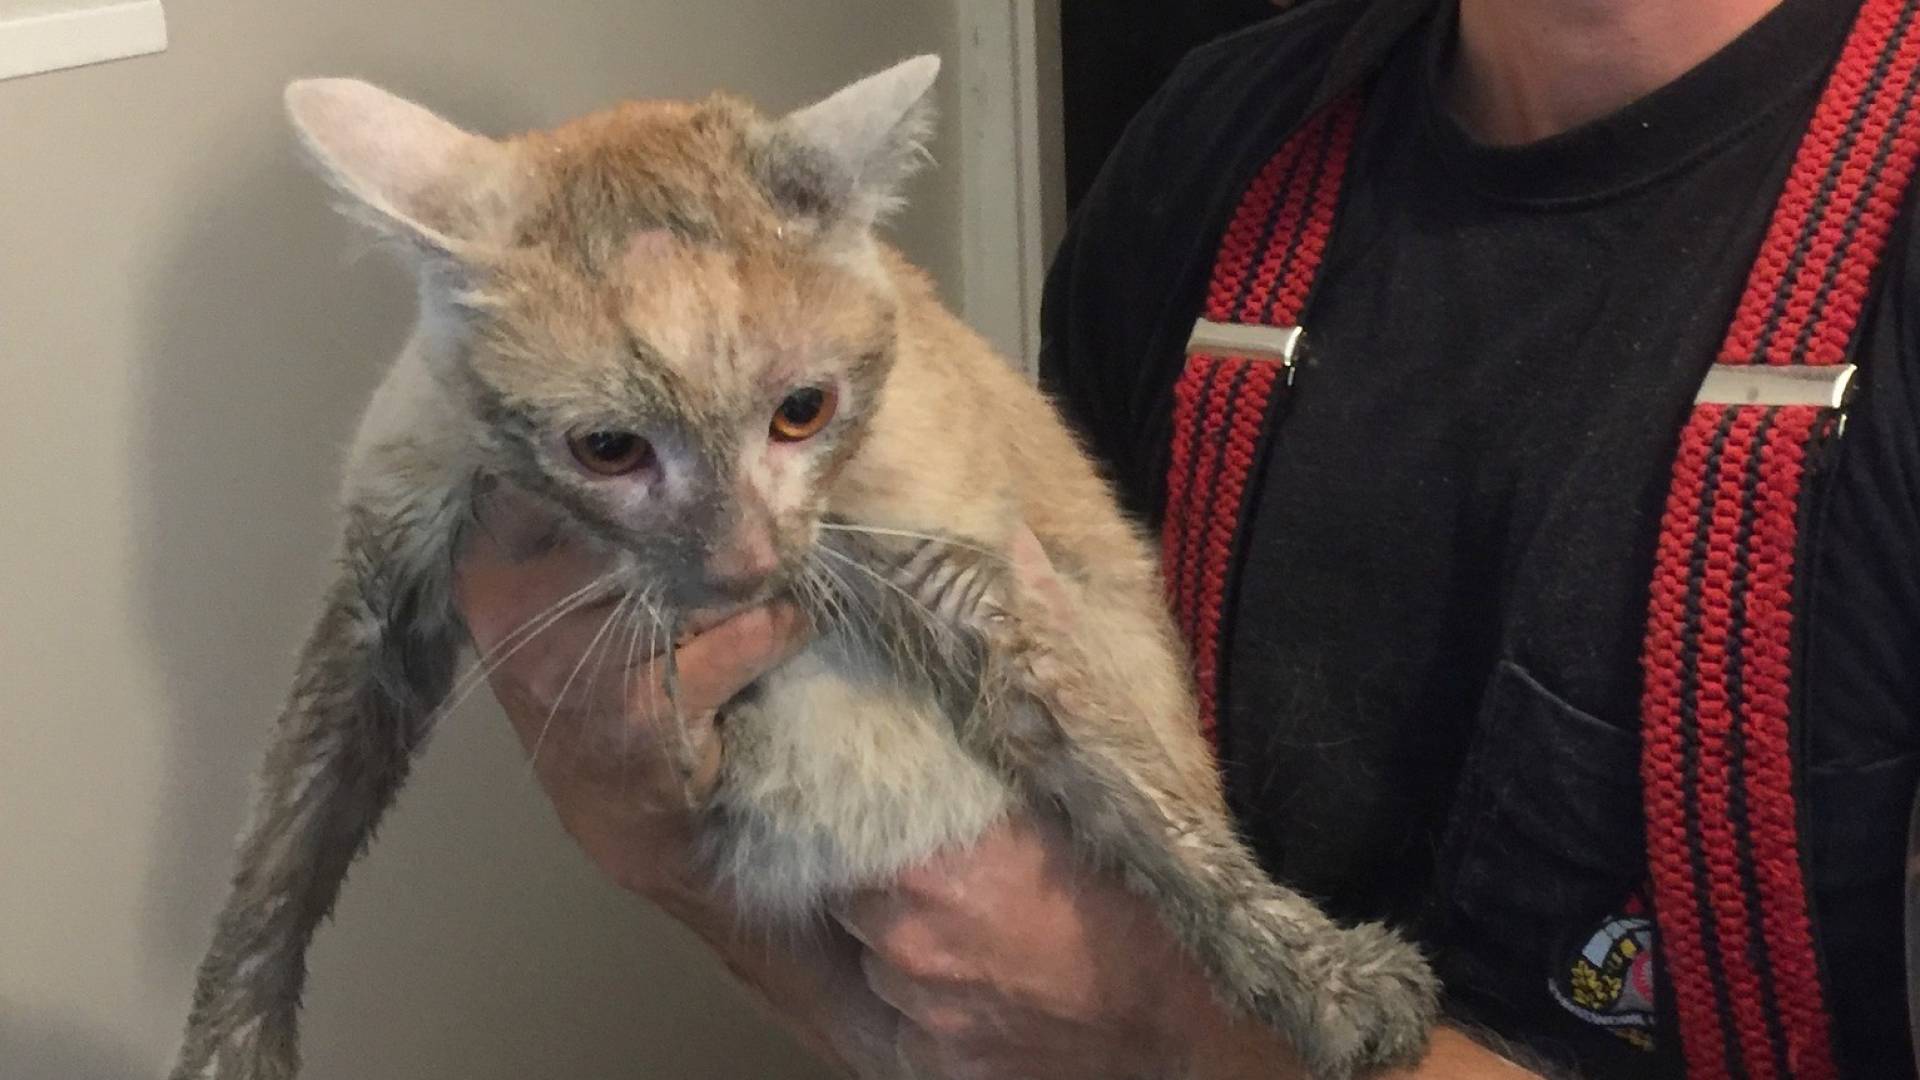 Uratowali kota zaklinowanego w szybie wentylacyjnym, nietypowa akcja strażaków